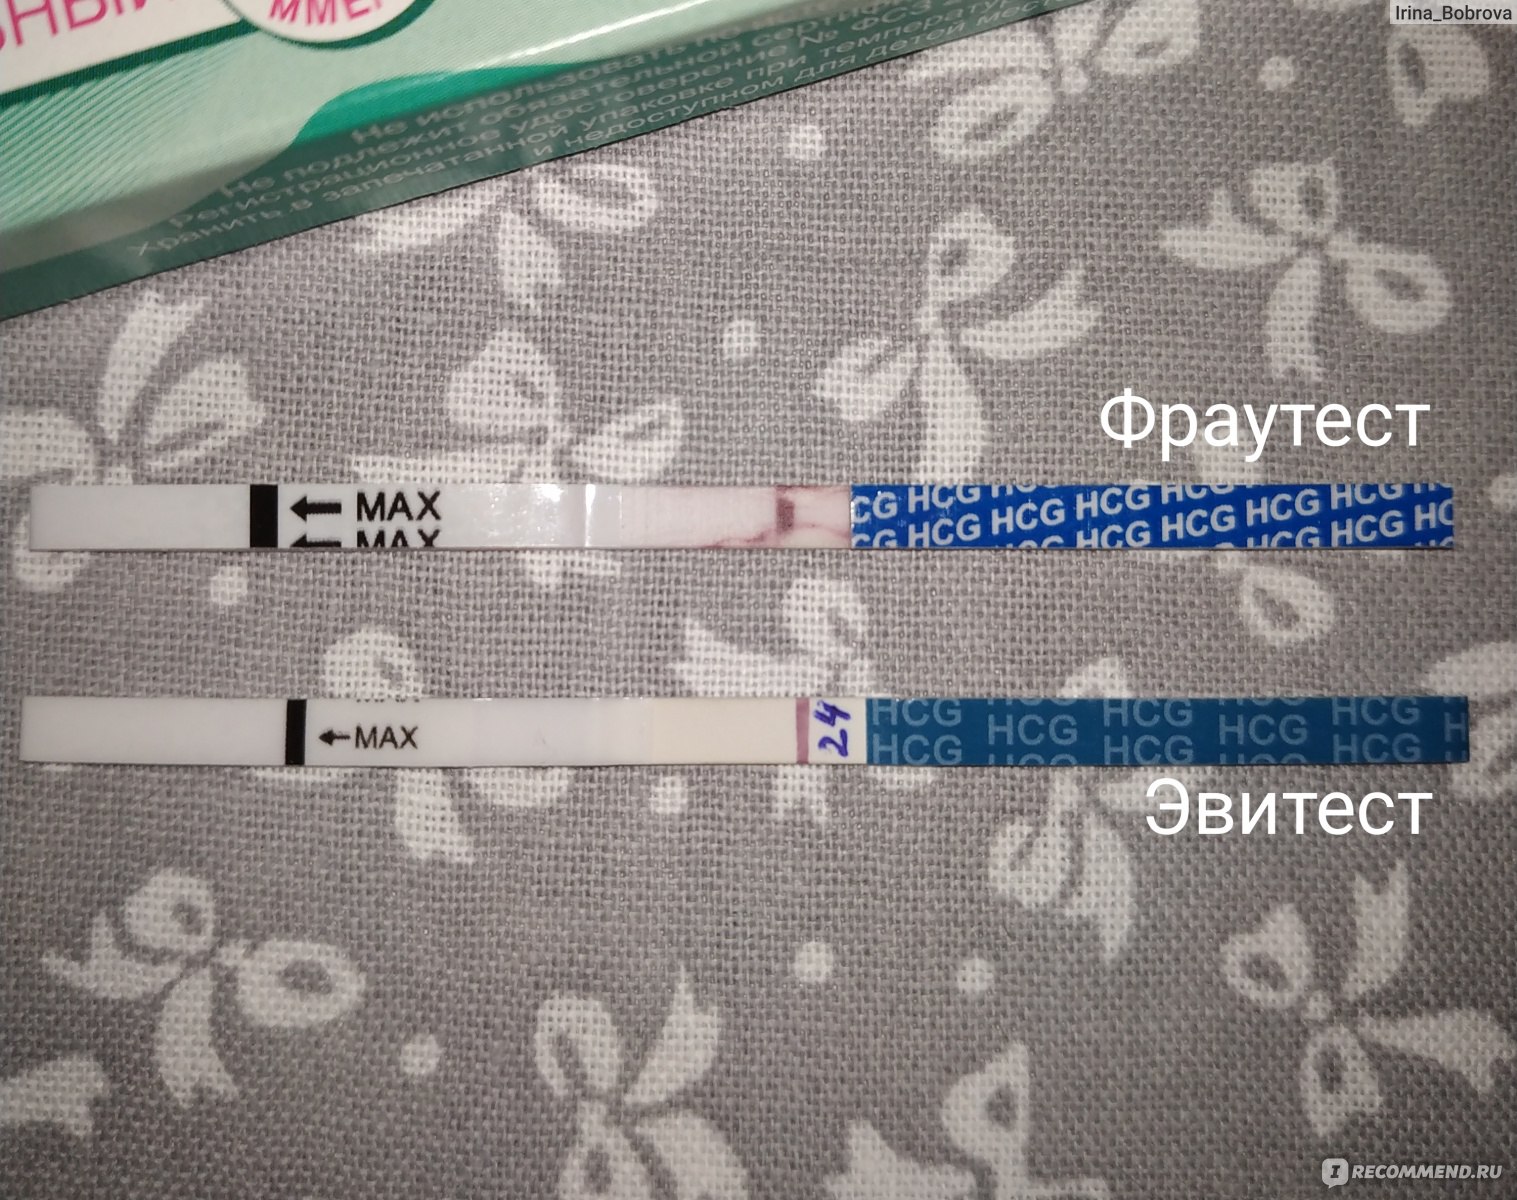 Тесты на беременность на ранних сроках до задержки фото с полосками по дням беременности